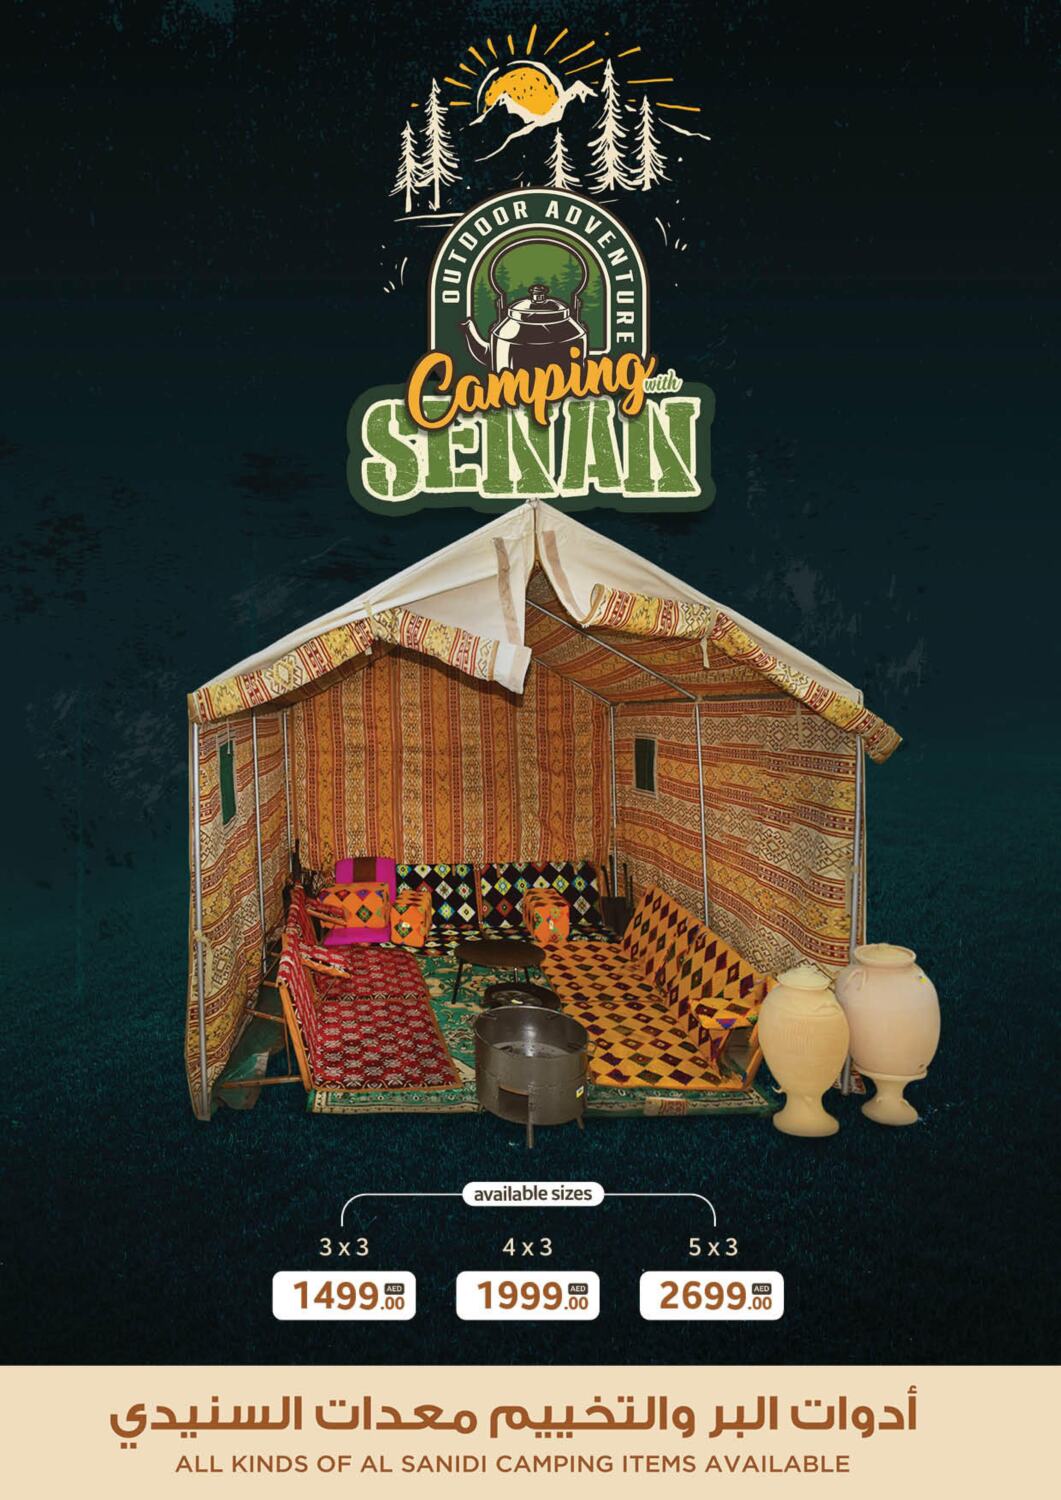 Senan Hypermarket Camping With Senan in UAE - Umm al Quwain. Till